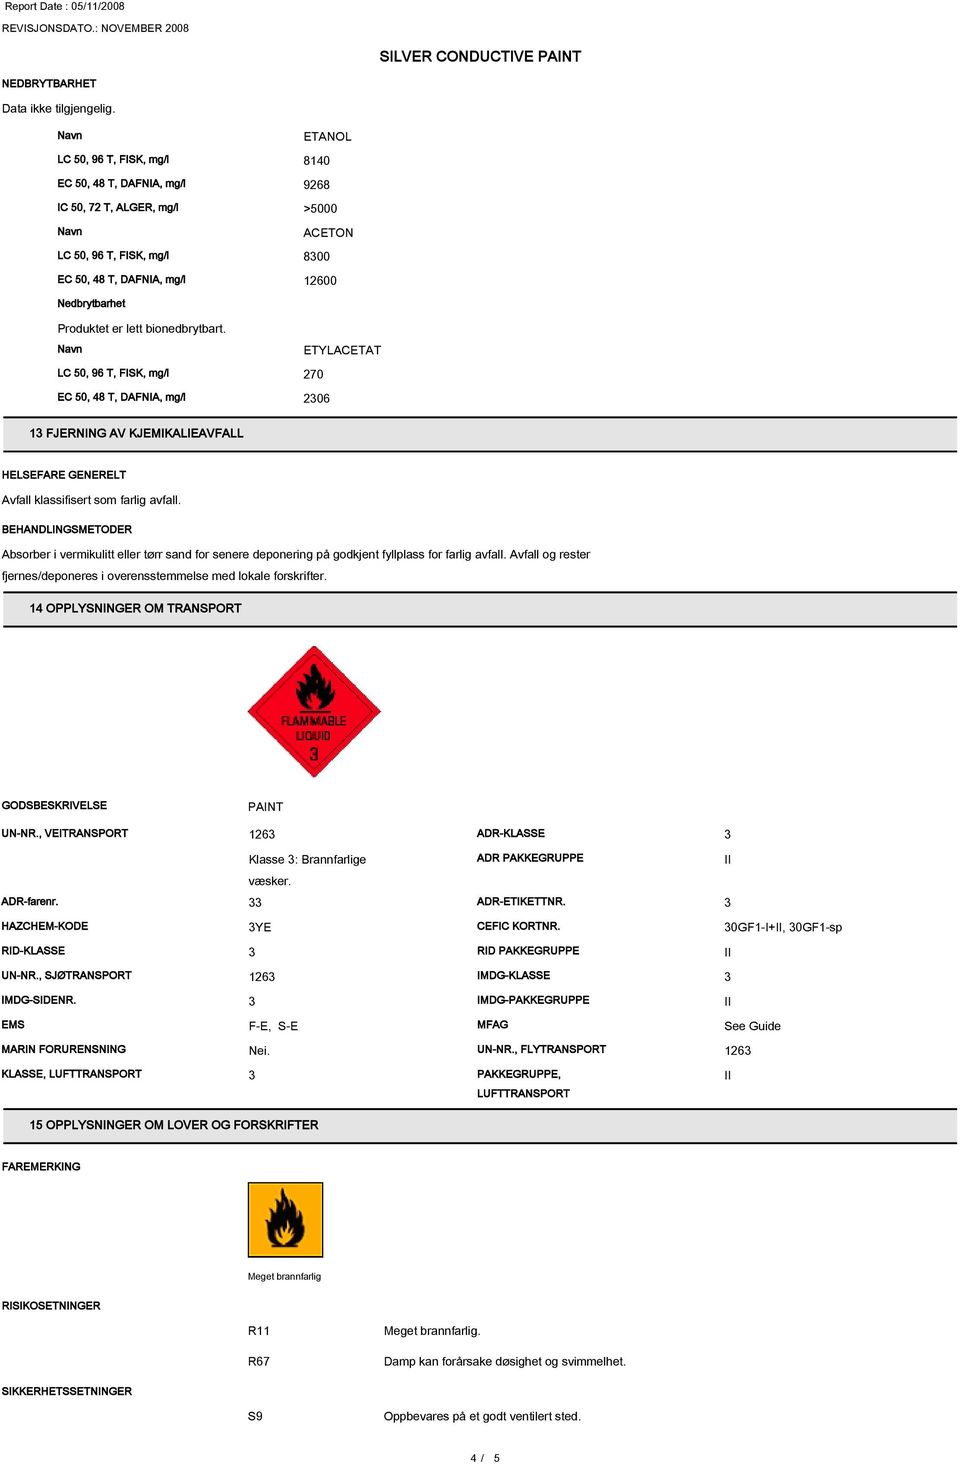 bionedbrytbart. LC 50, 96 T, FISK, mg/l 270 EC 50, 48 T, DAFNIA, mg/l 206 1 FJERNING AV KJEMIKALIEAVFALL HELSEFARE GENERELT Avfall klassifisert som farlig avfall.